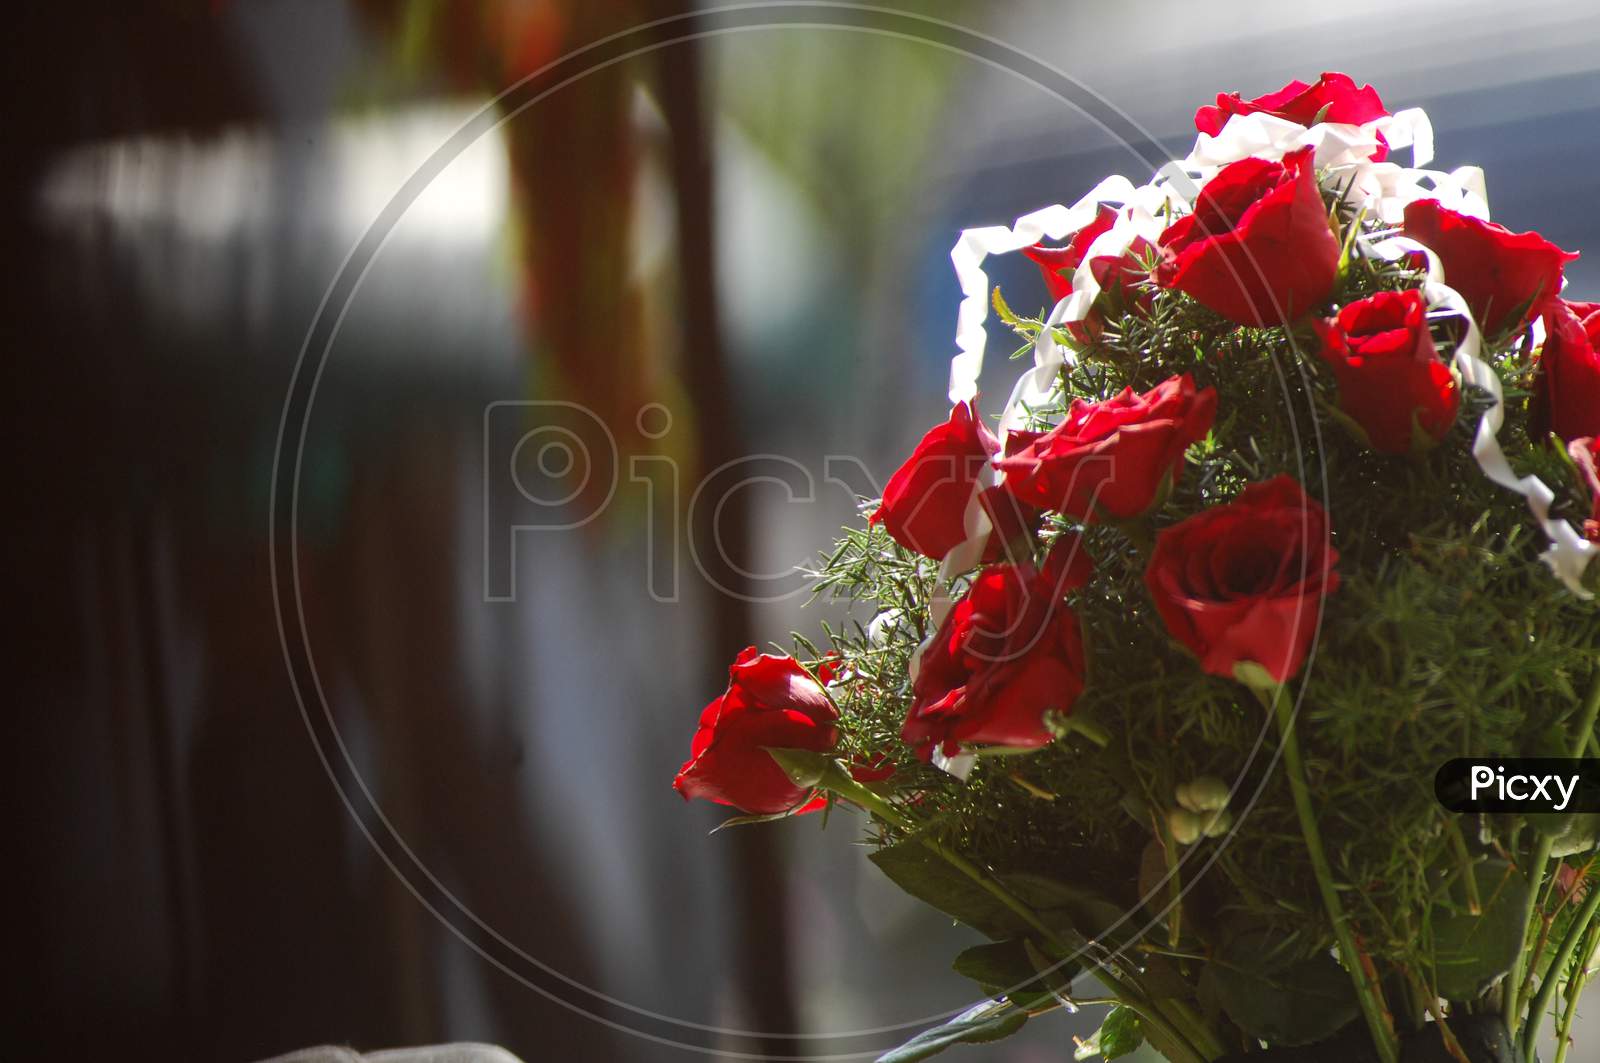 A Rose flower bouquet